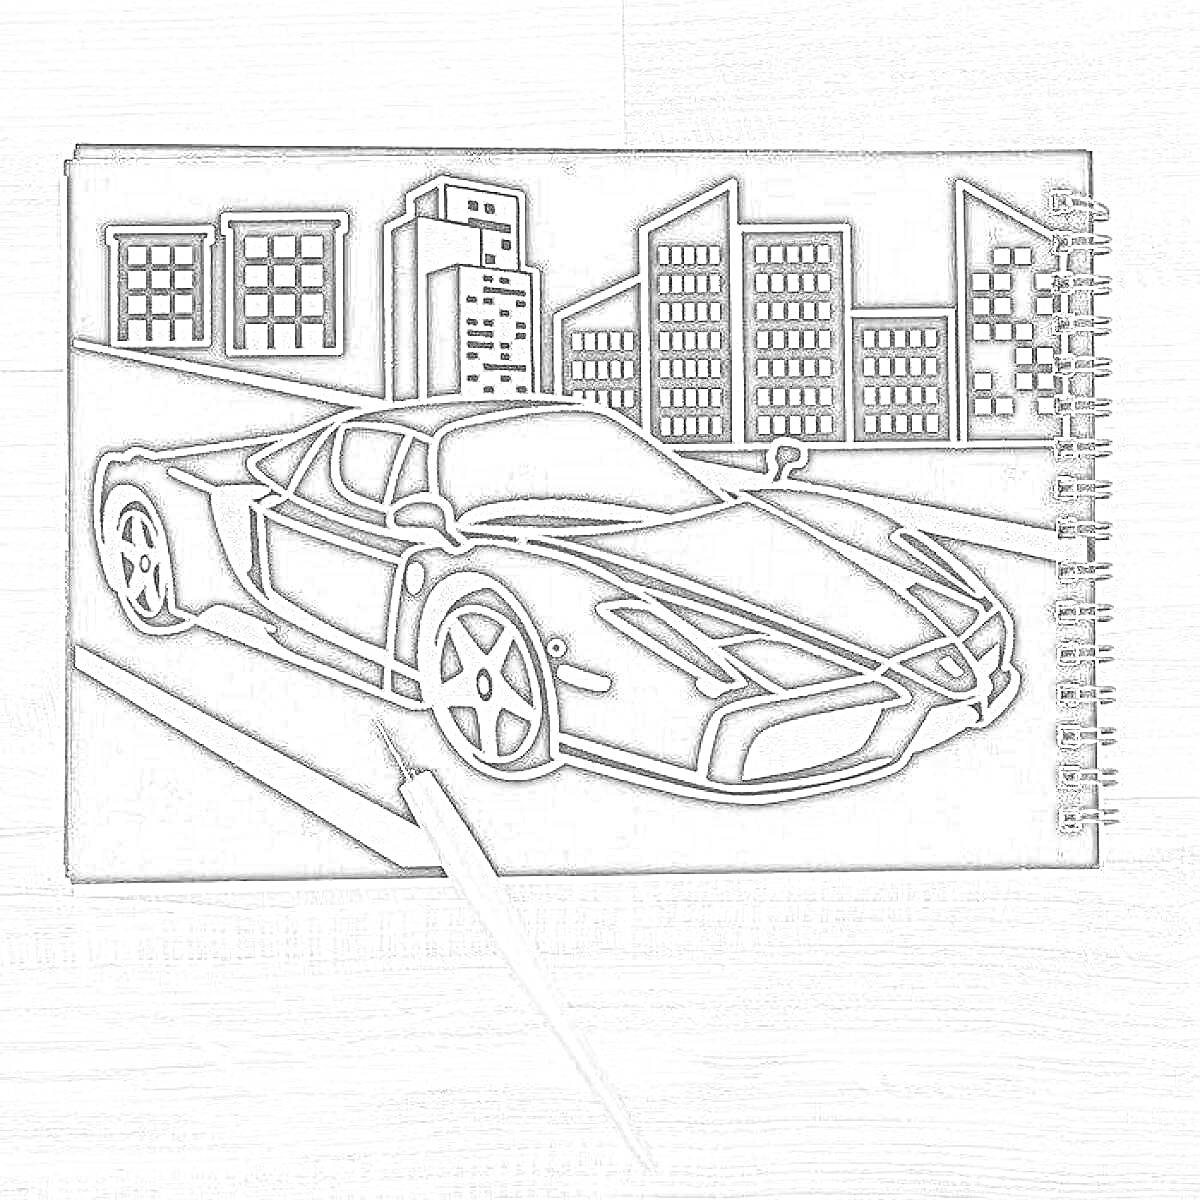 Раскраска Гравюра в блокноте с изображением спортивной машины на фоне городских зданий.